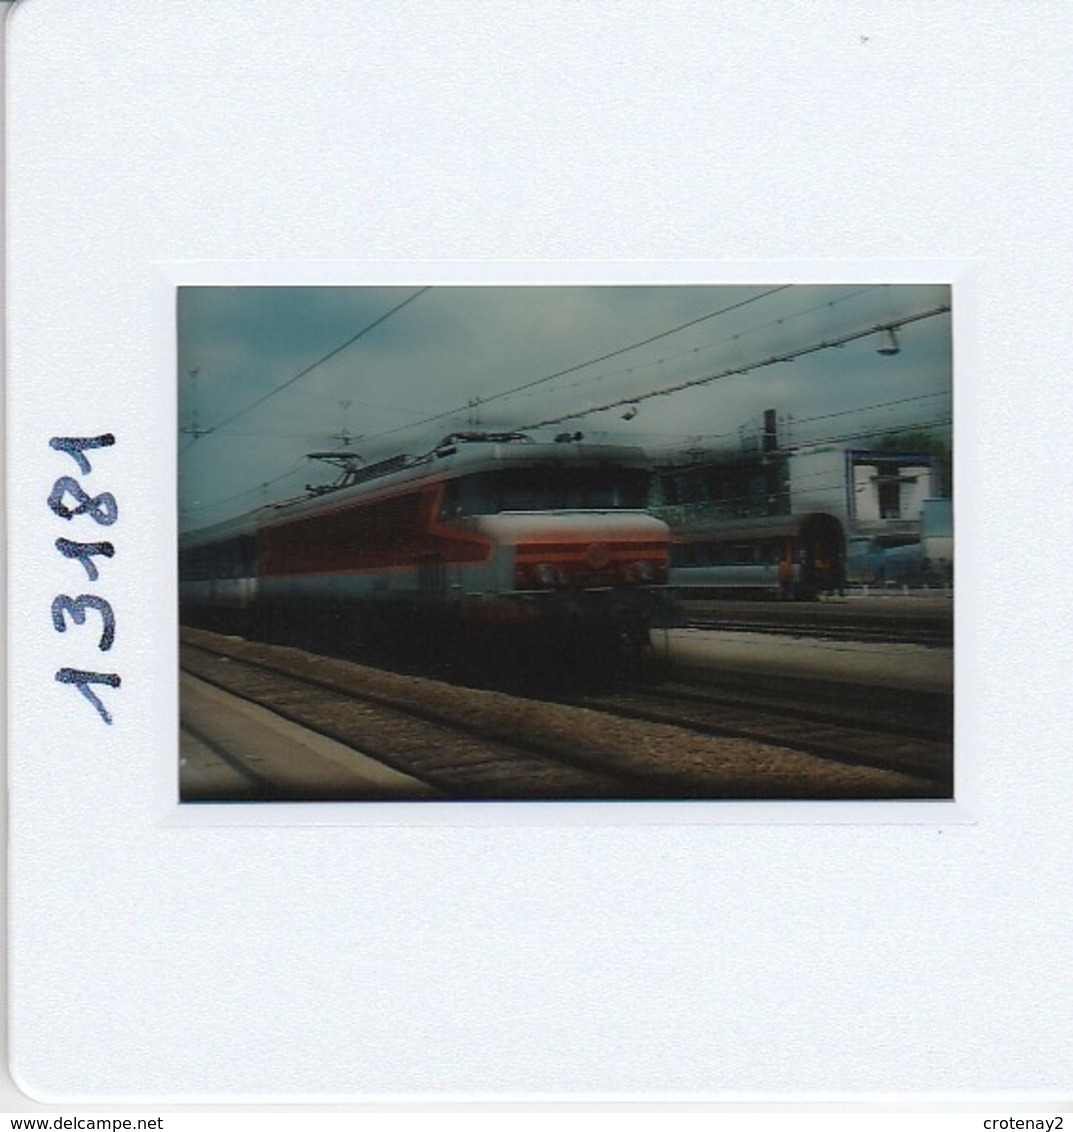 Photo Diapo Diapositive Slide Train Locomotive Electrique SNCF CC 6537 Paris Austerlitz Le 28/06/1996 VOIR ZOOM - Diapositives